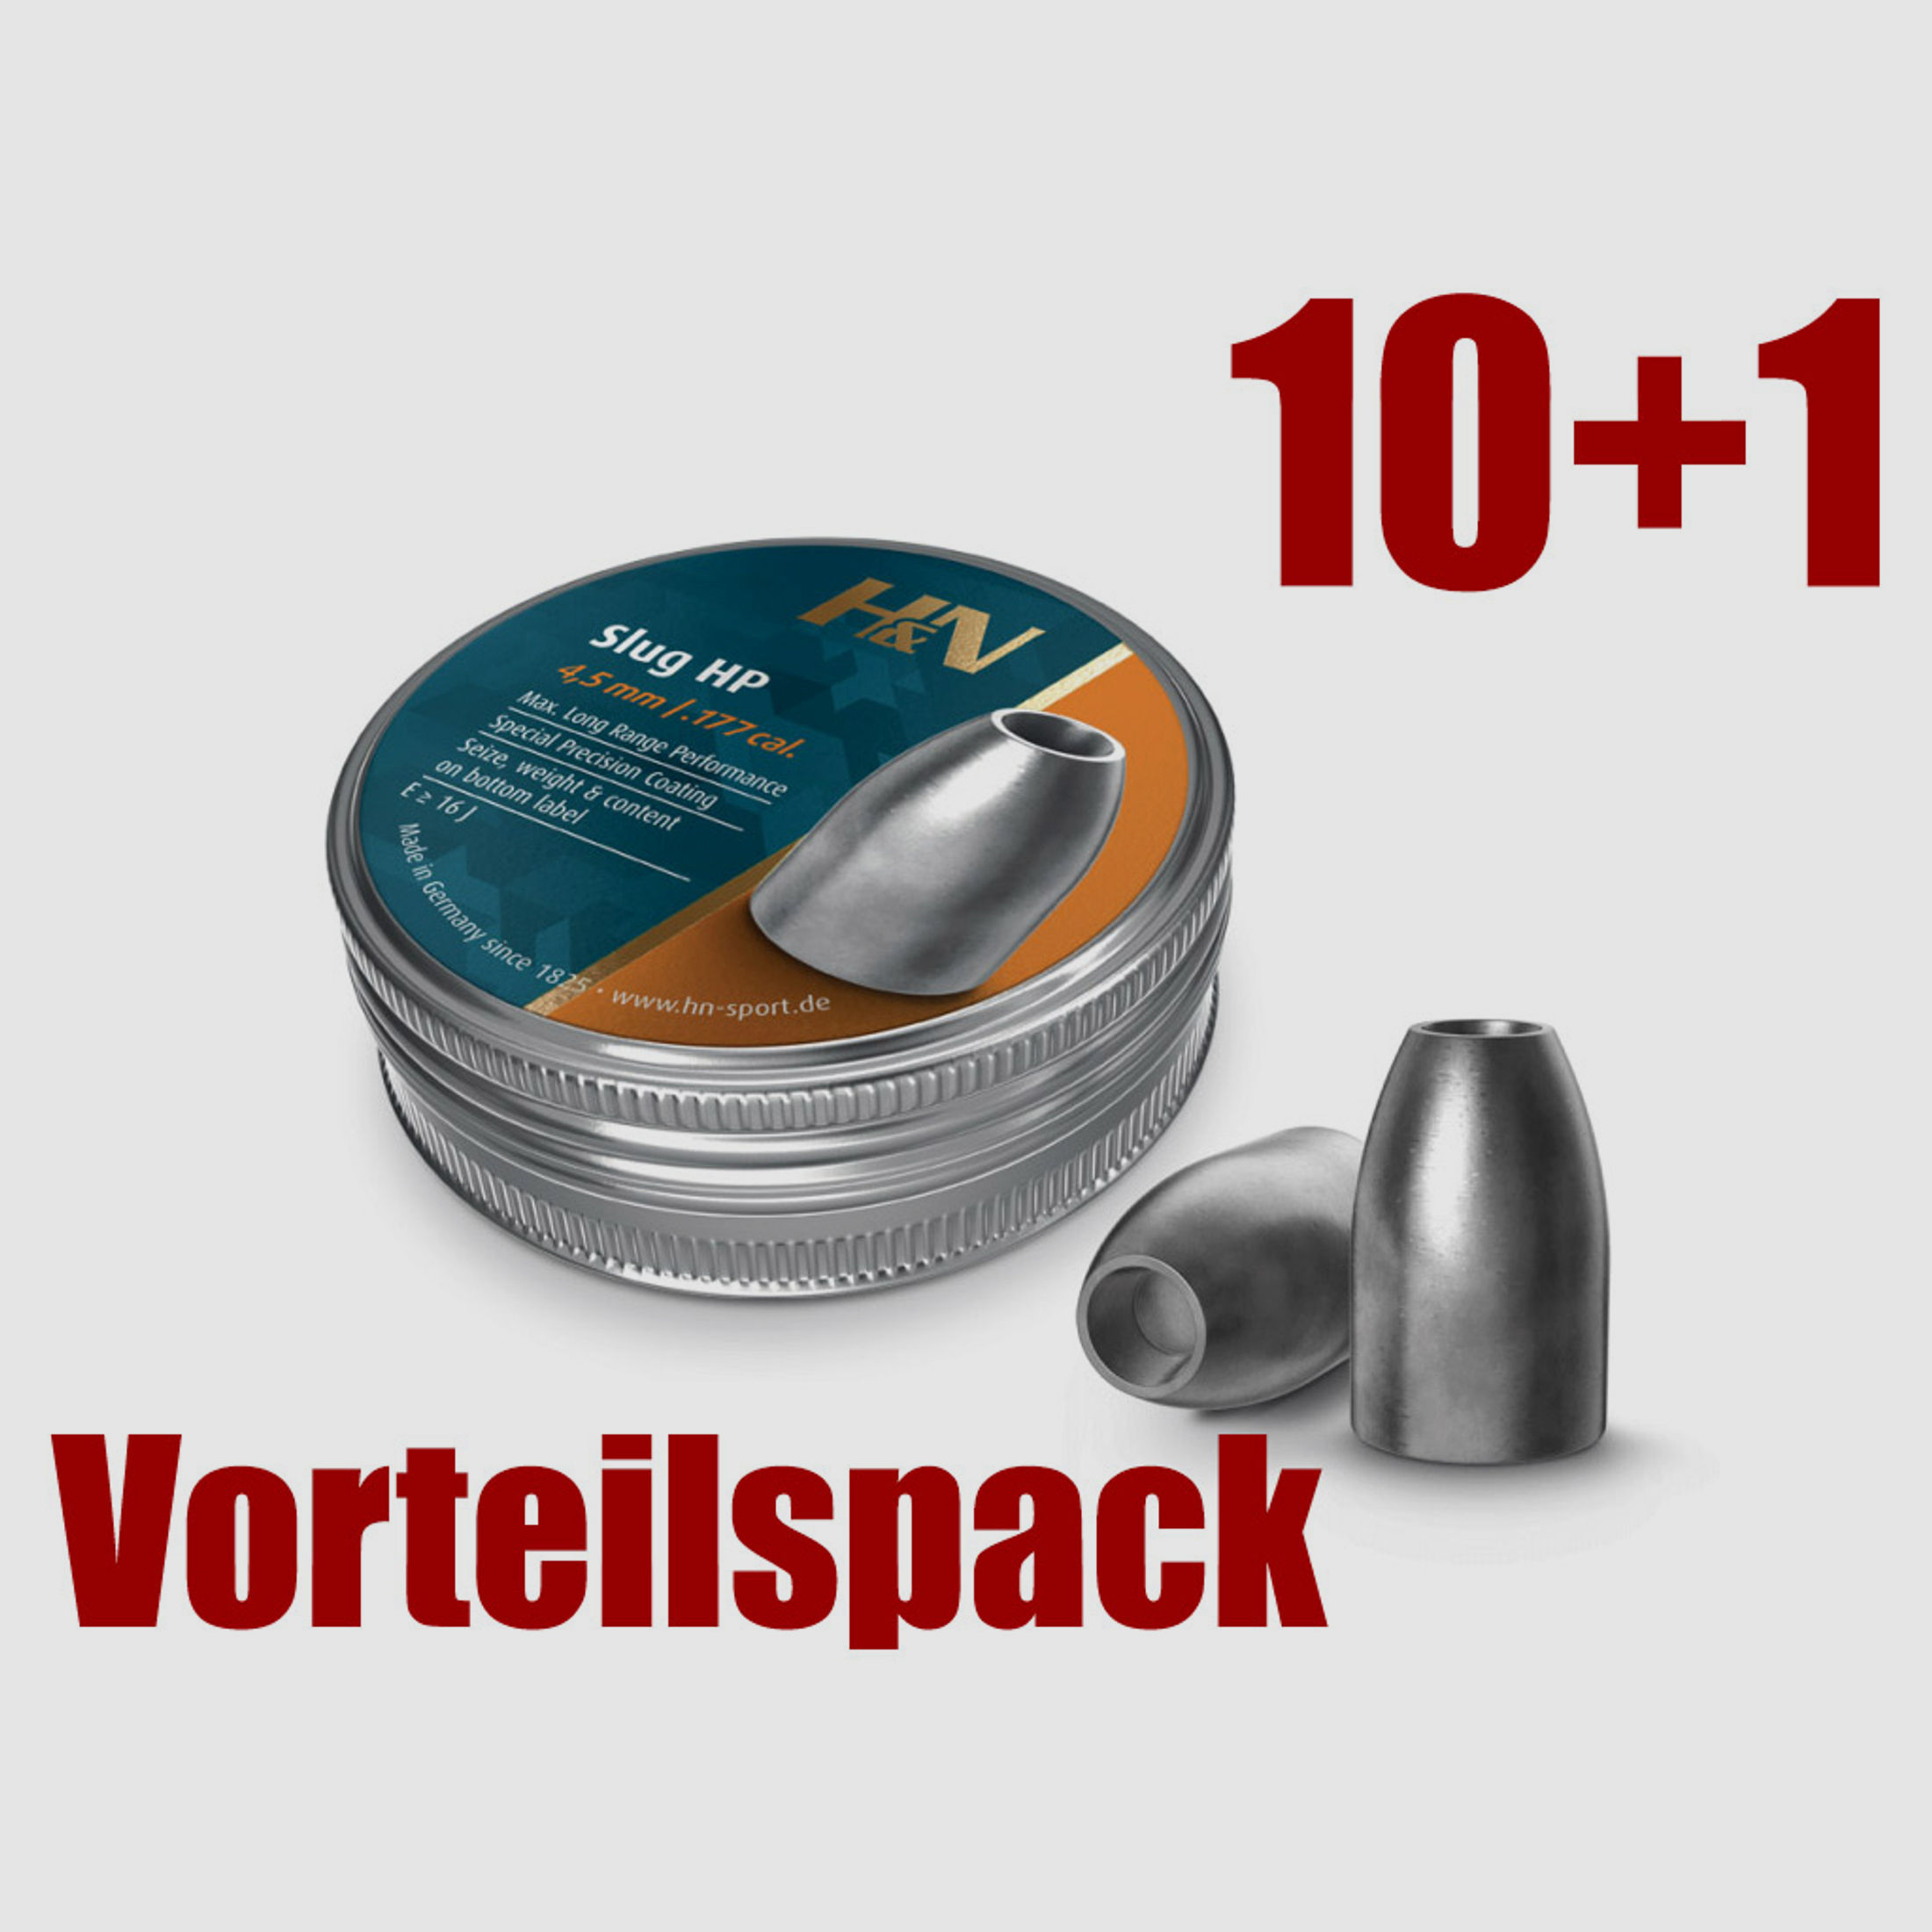 Vorteilspack 10+1 Hohlspitz Diabolos H&N Slug HP Kaliber 4,51 mm 0,65 g 10 gr glatt 11 x 400 StĂĽck